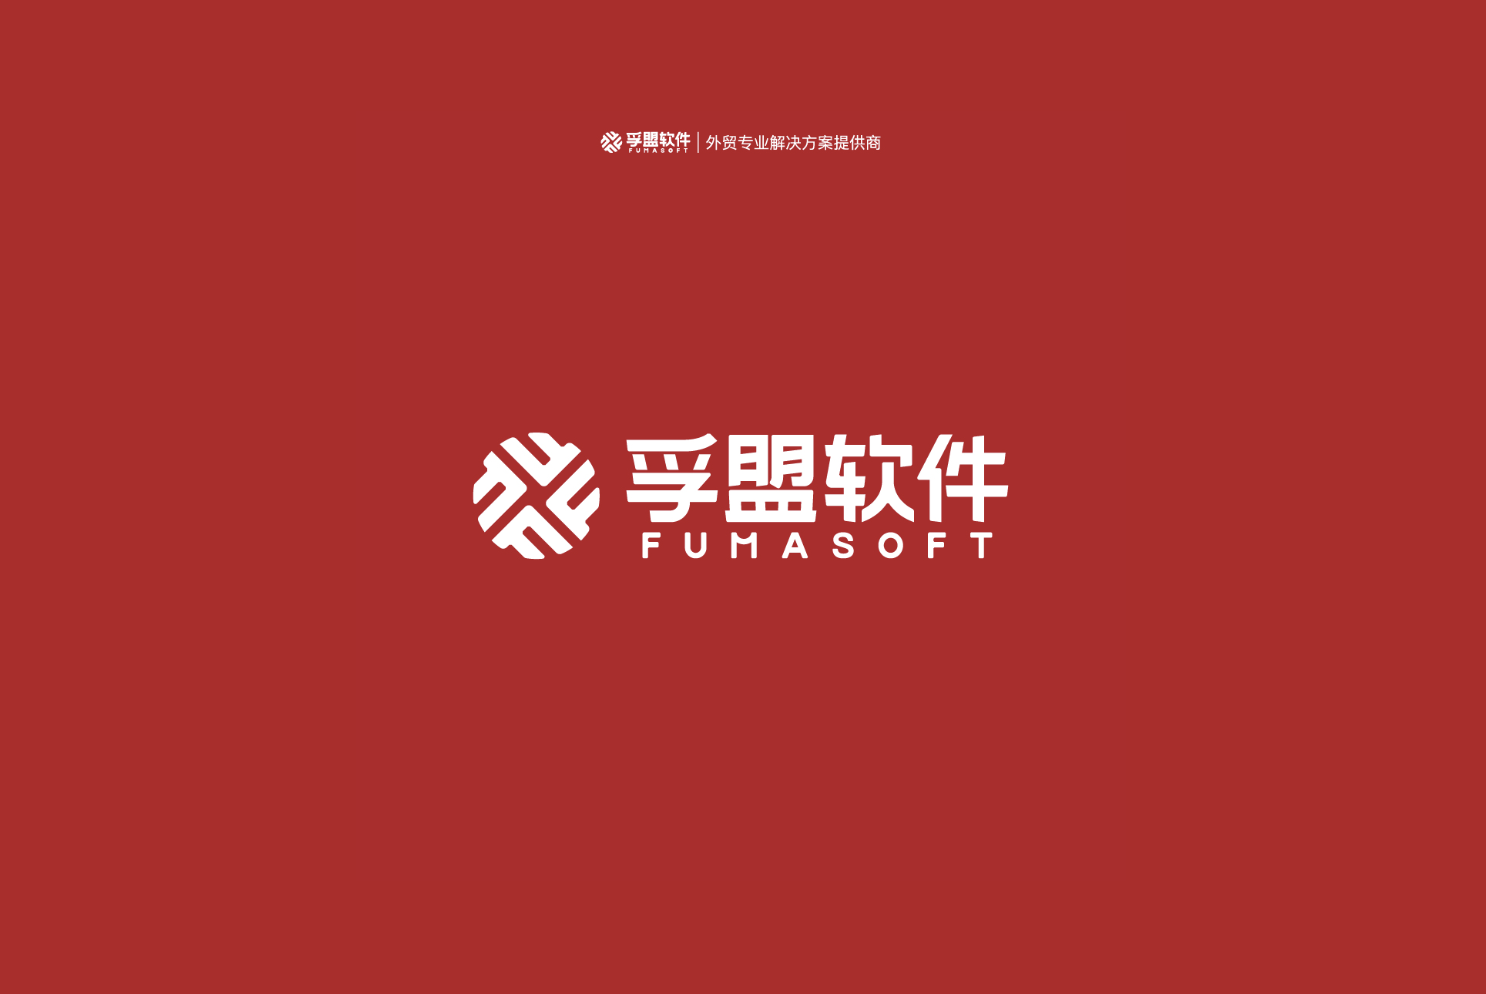 澳门威斯尼斯人娱乐9499
软件入选上海市第四批服务型制造示范平台名单